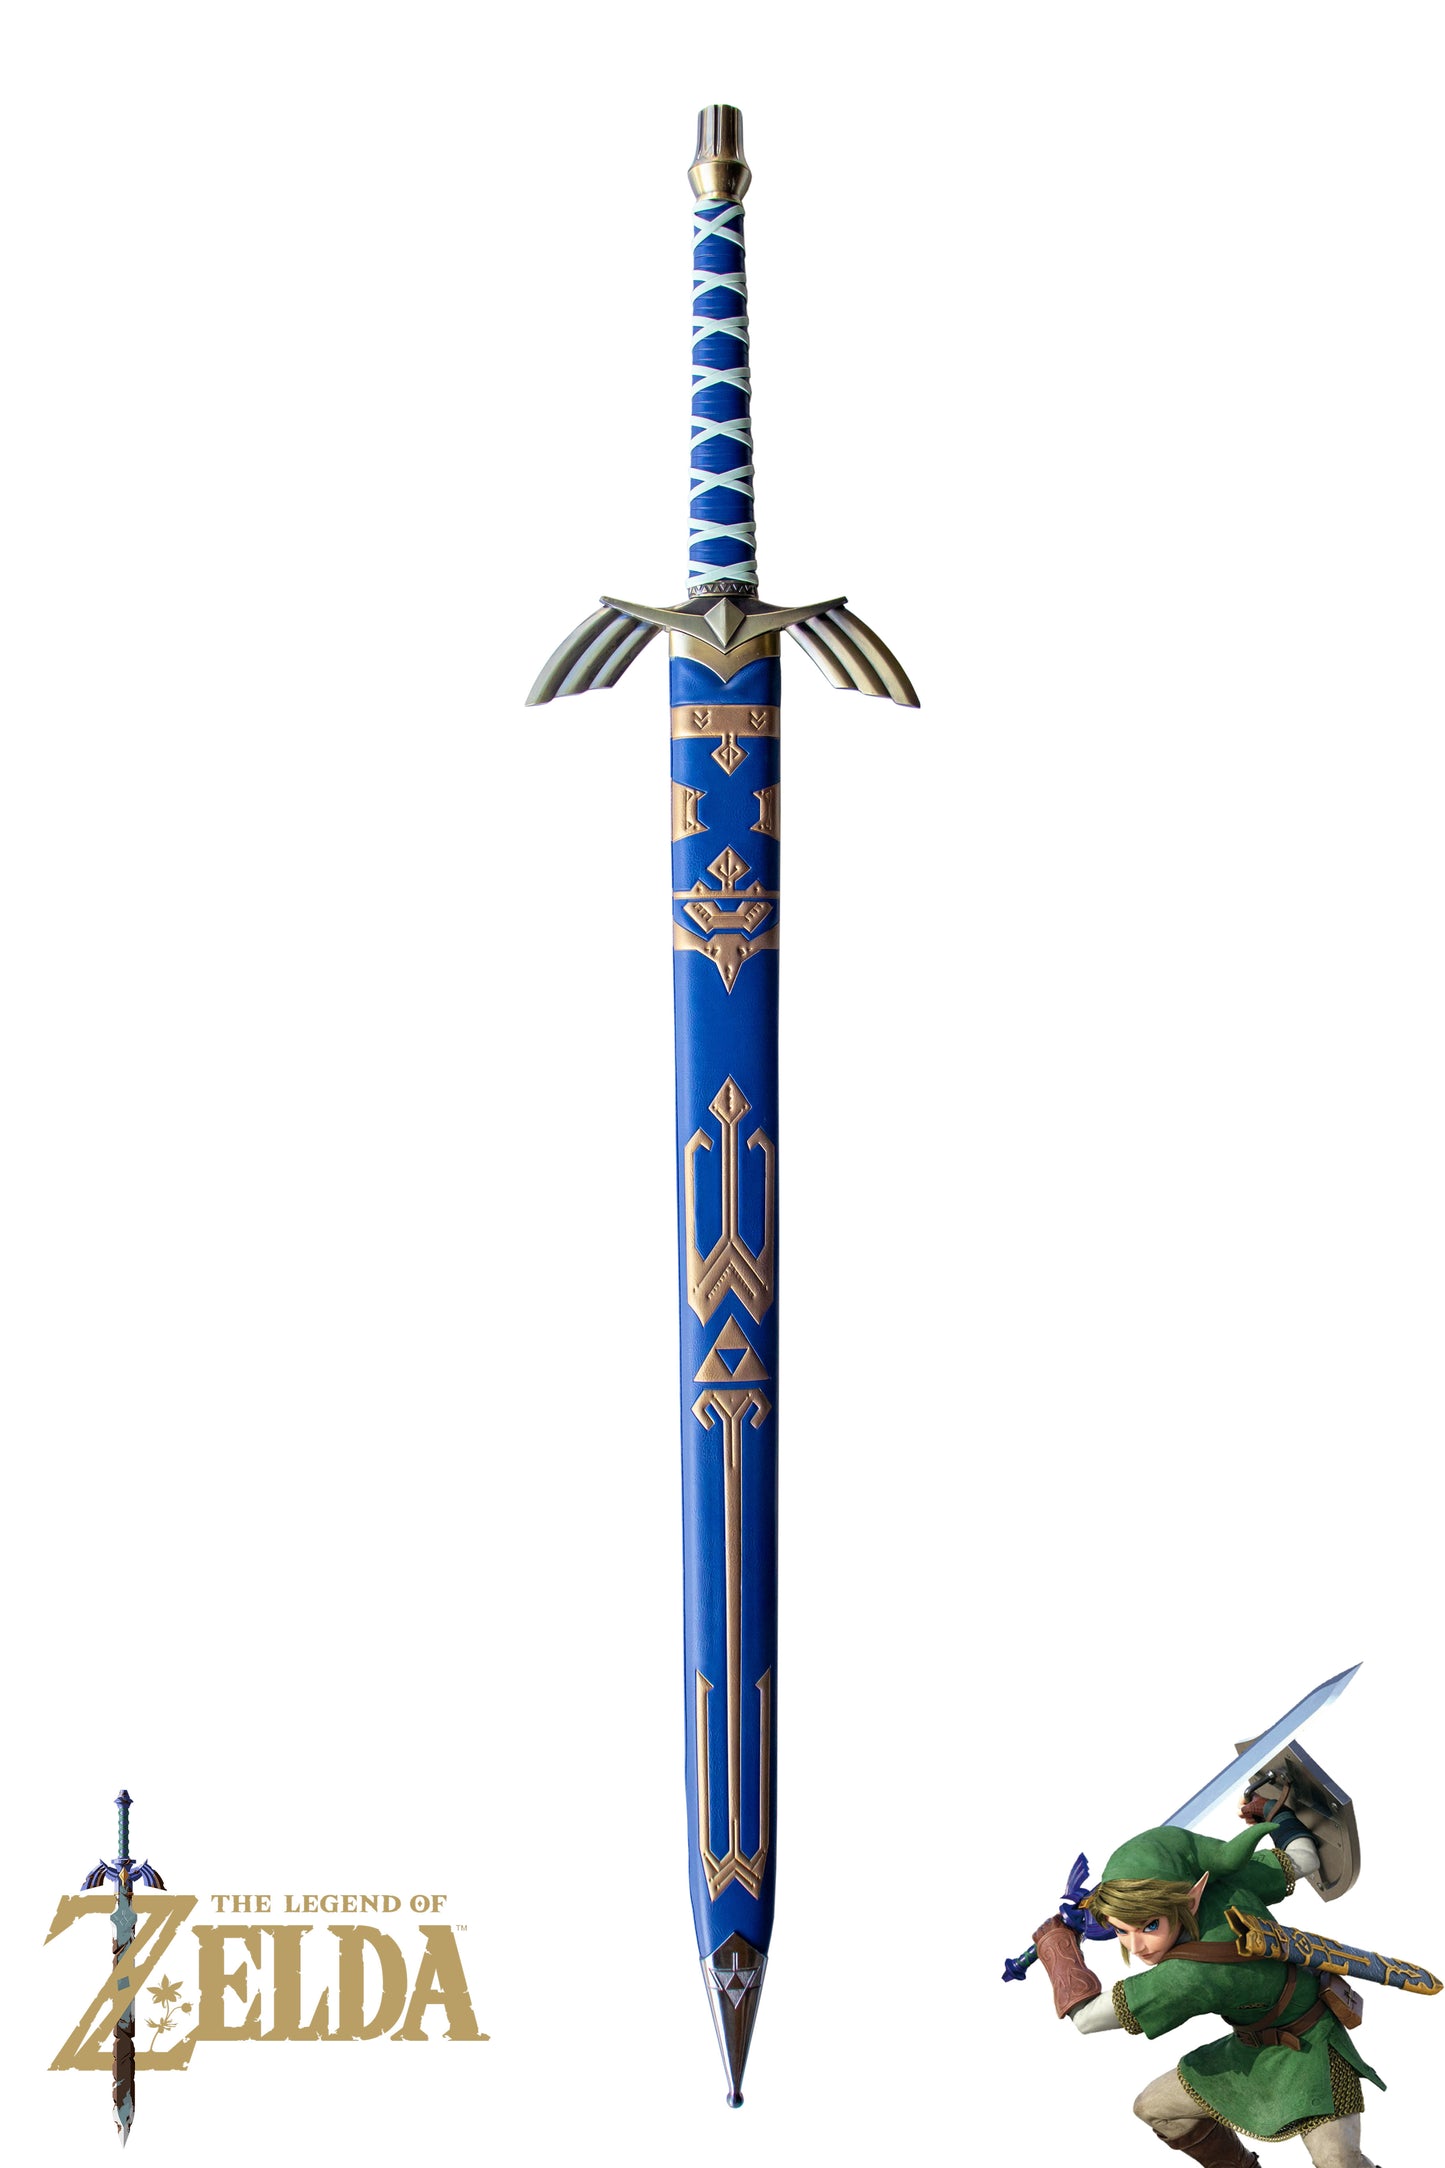 THE LEGEND OF ZELDA – THE MASTER SWORD